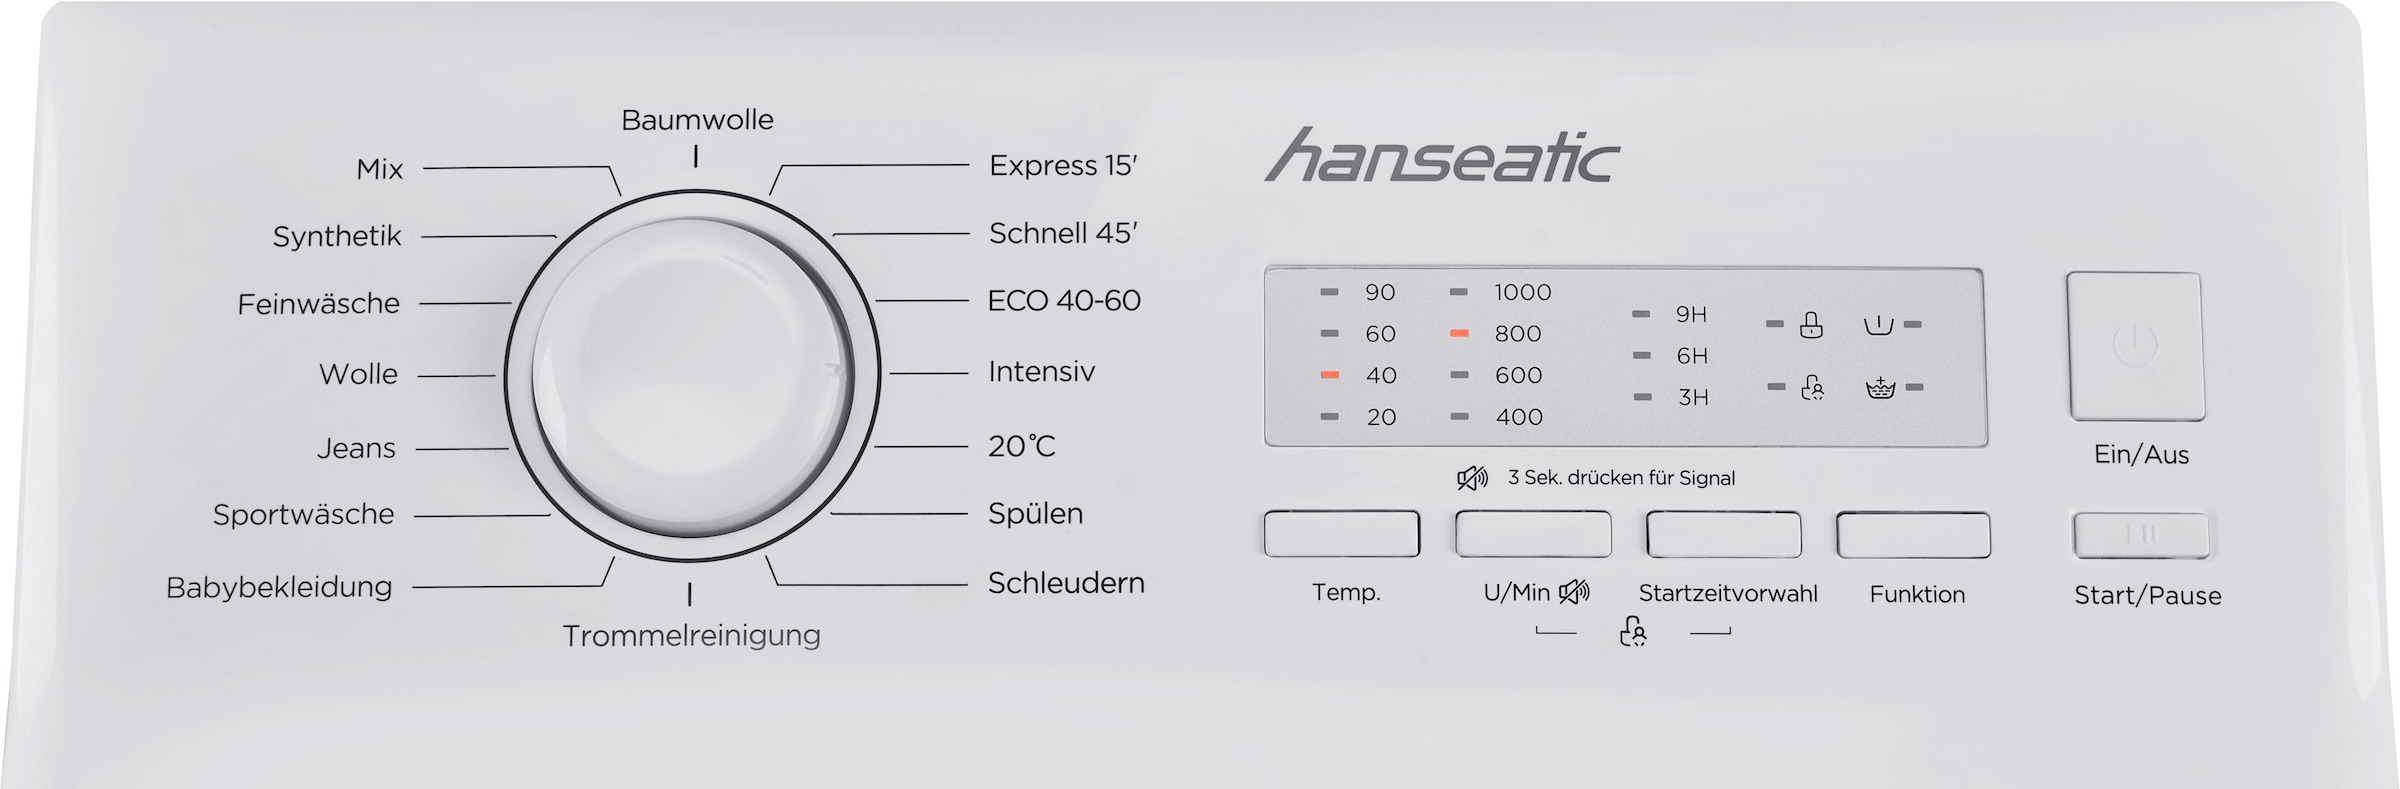 Hanseatic Waschmaschine HTW510D, Mengenautomatik, 5 U/min, Toplader, 1000 Jahren mit XXL Überlaufschutzsystem kg, Garantie 3